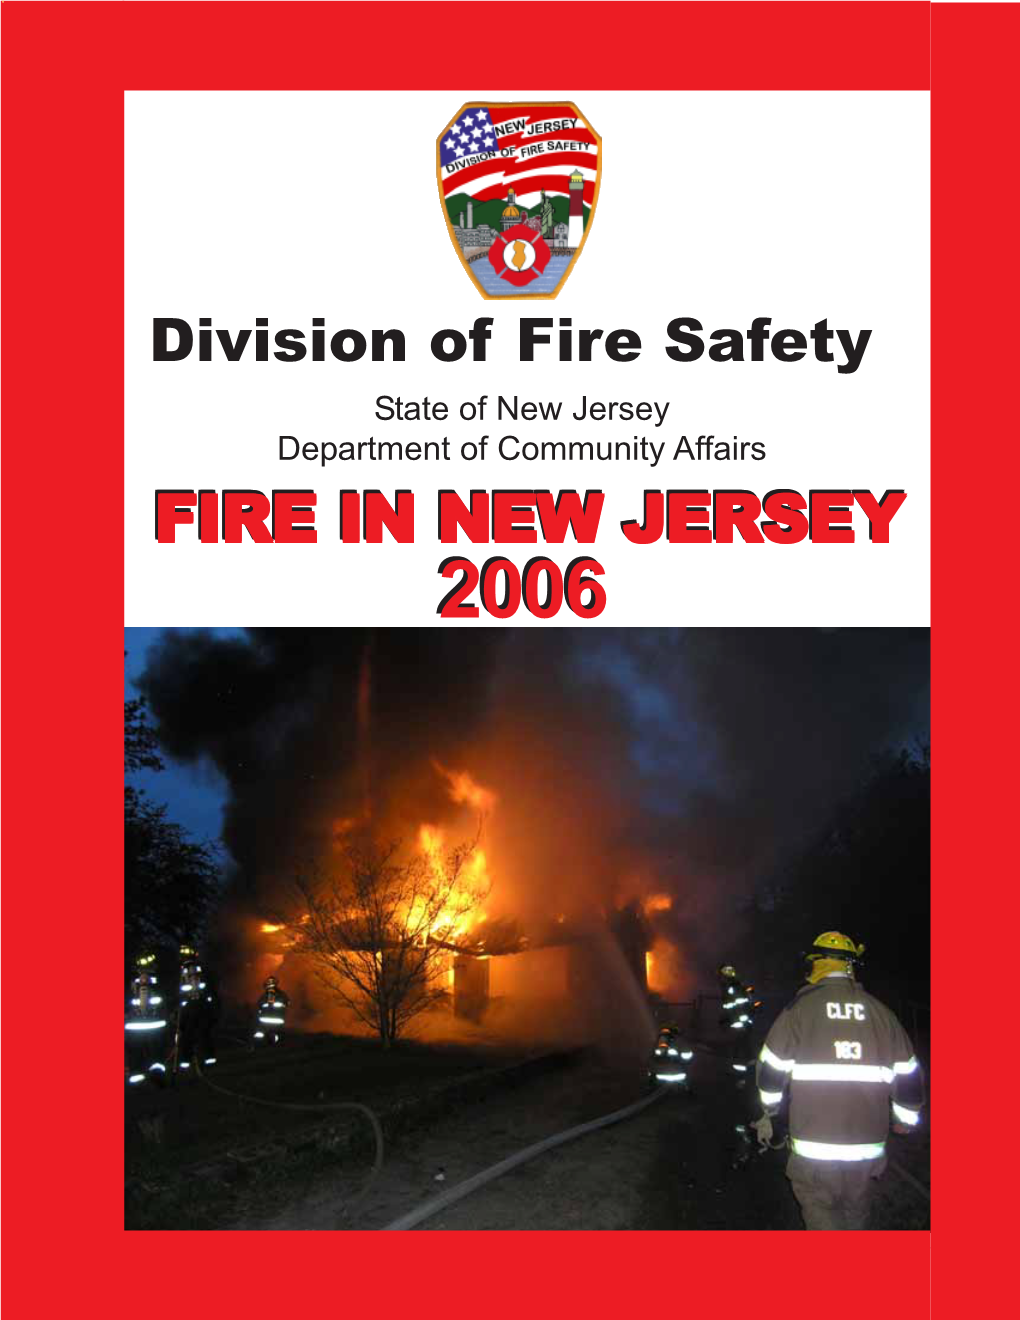 Fire in Nj 2006